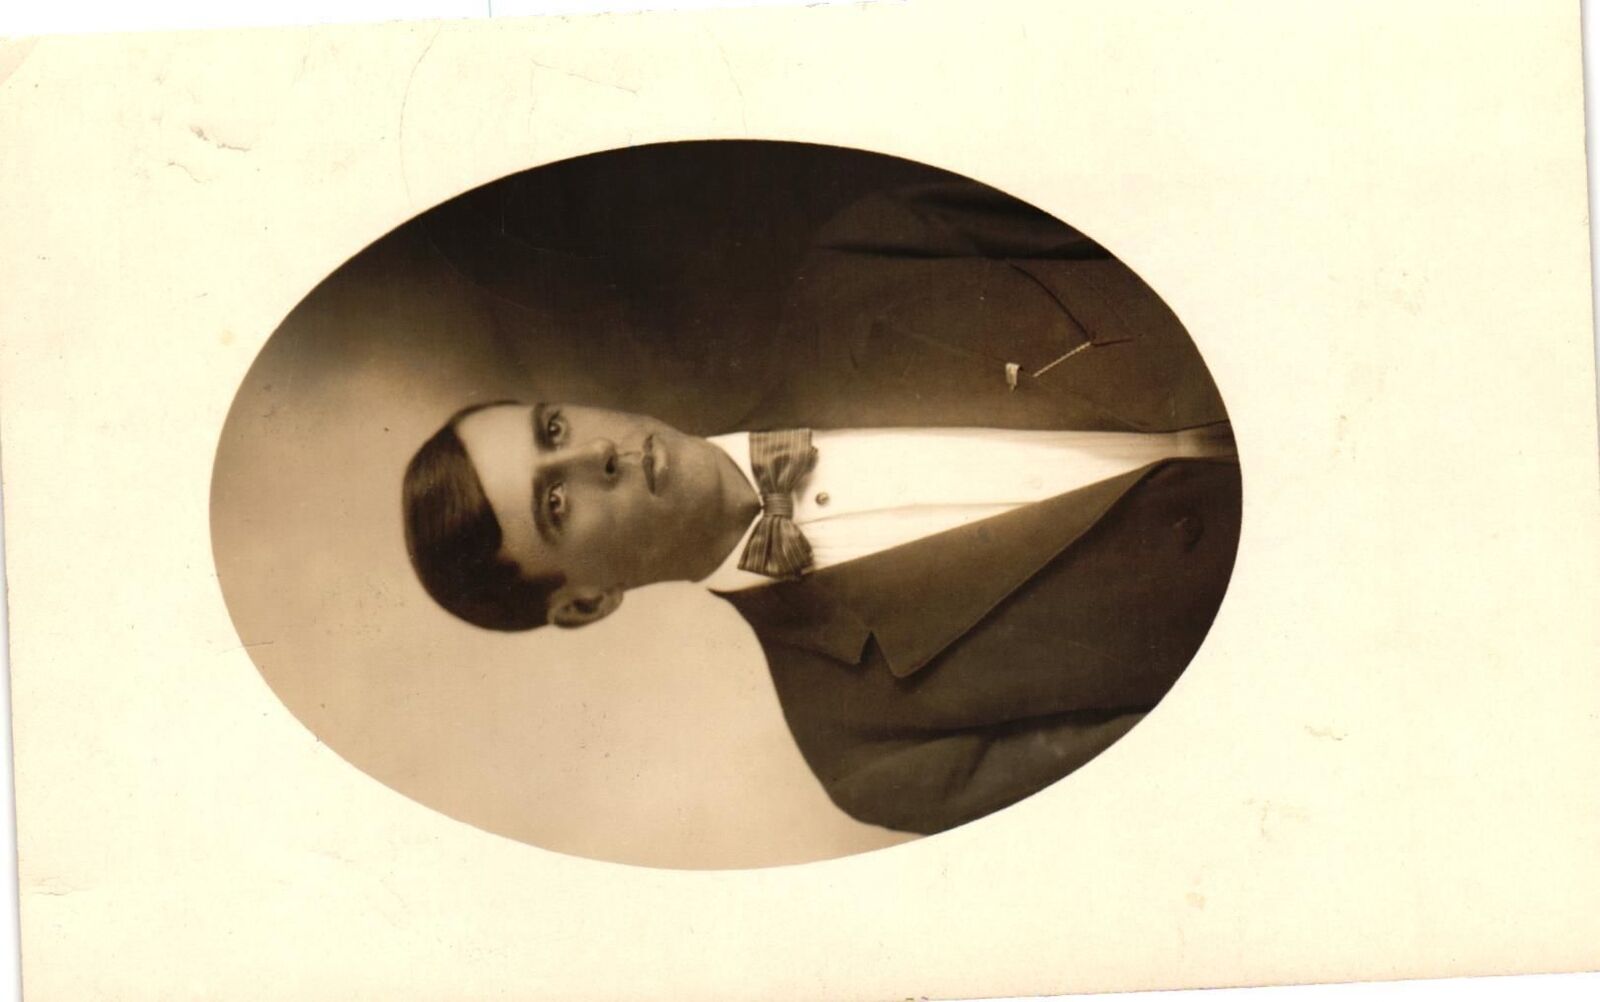 Vintage Postcard- A portrait of a man